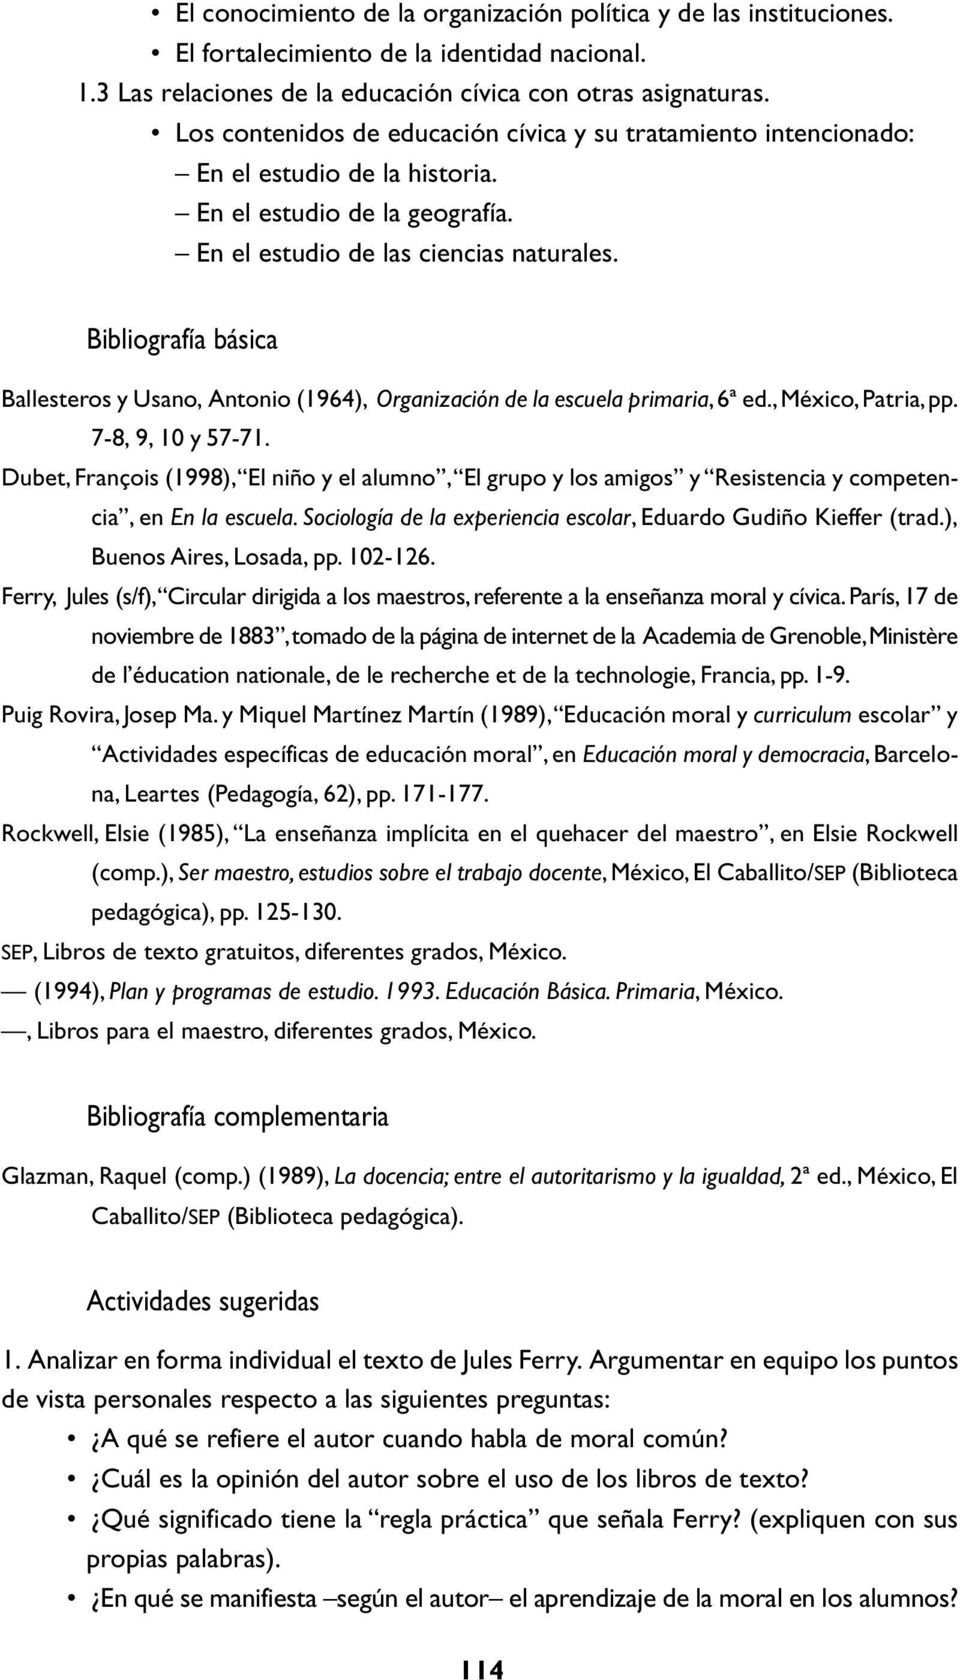 Bibliografía básica Ballesteros y Usano, Antonio (1964), Organización de la escuela primaria, 6ª ed., México, Patria, pp. 7-8, 9, 10 y 57-71.